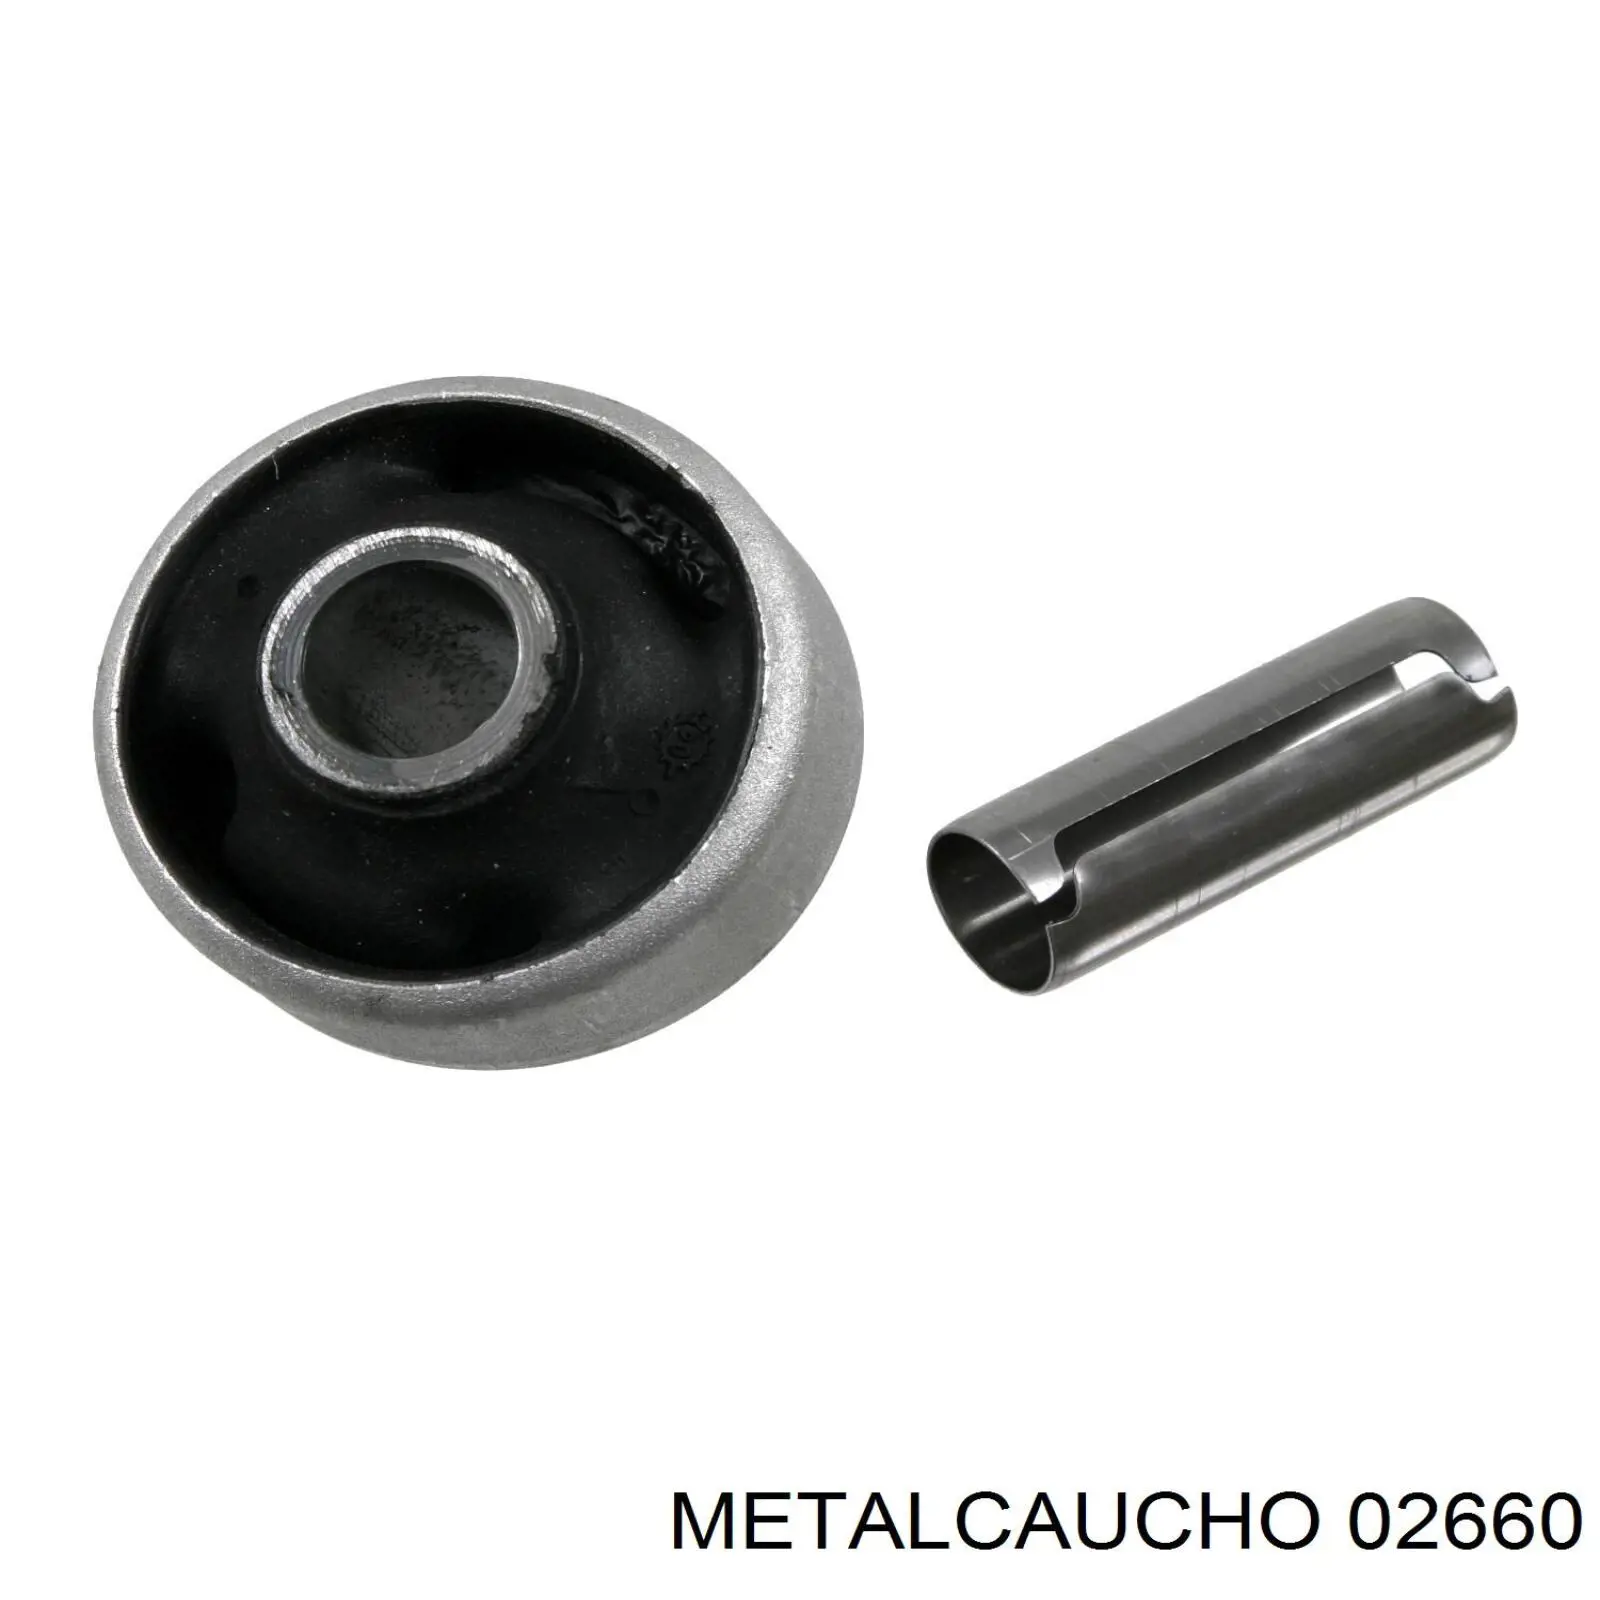 02660 Metalcaucho silentblock de suspensión delantero inferior